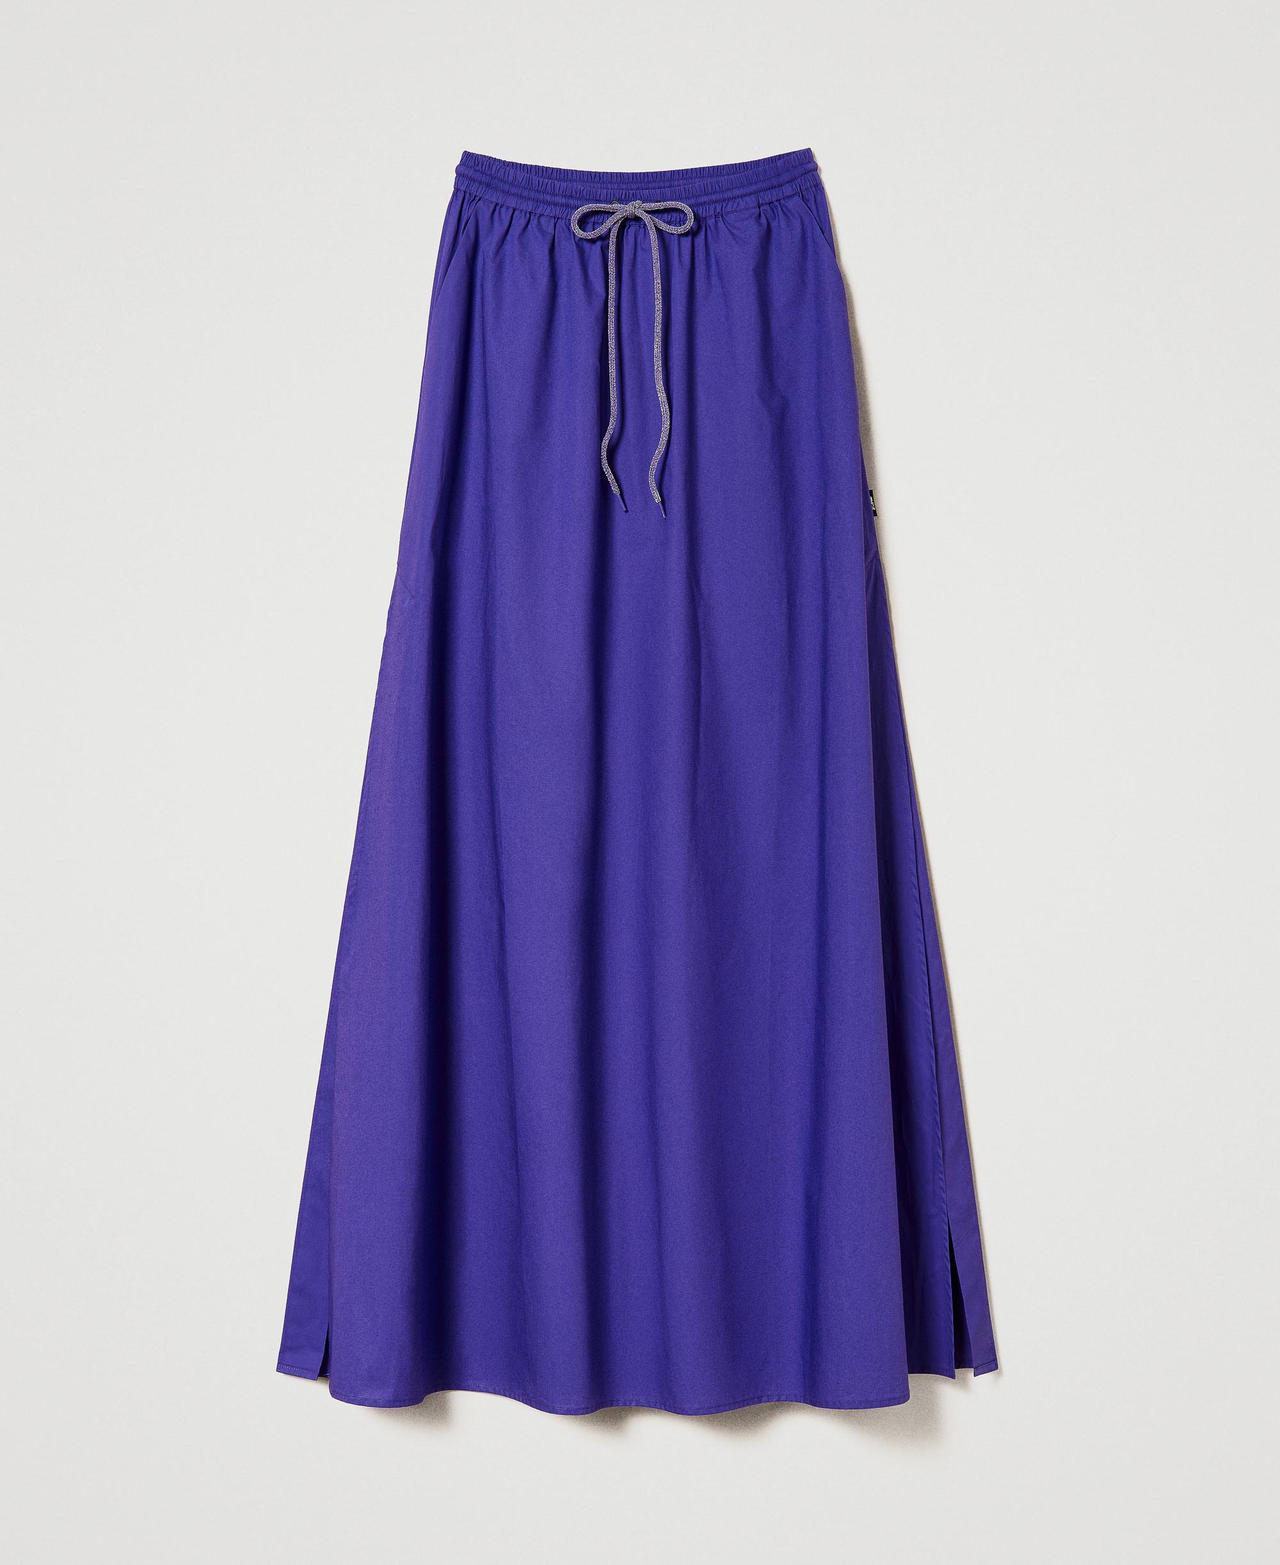 Длинная юбка MYFO из поплина Фиолетовый "Королевский Пурпурный" женщина 241AQ2054-0S